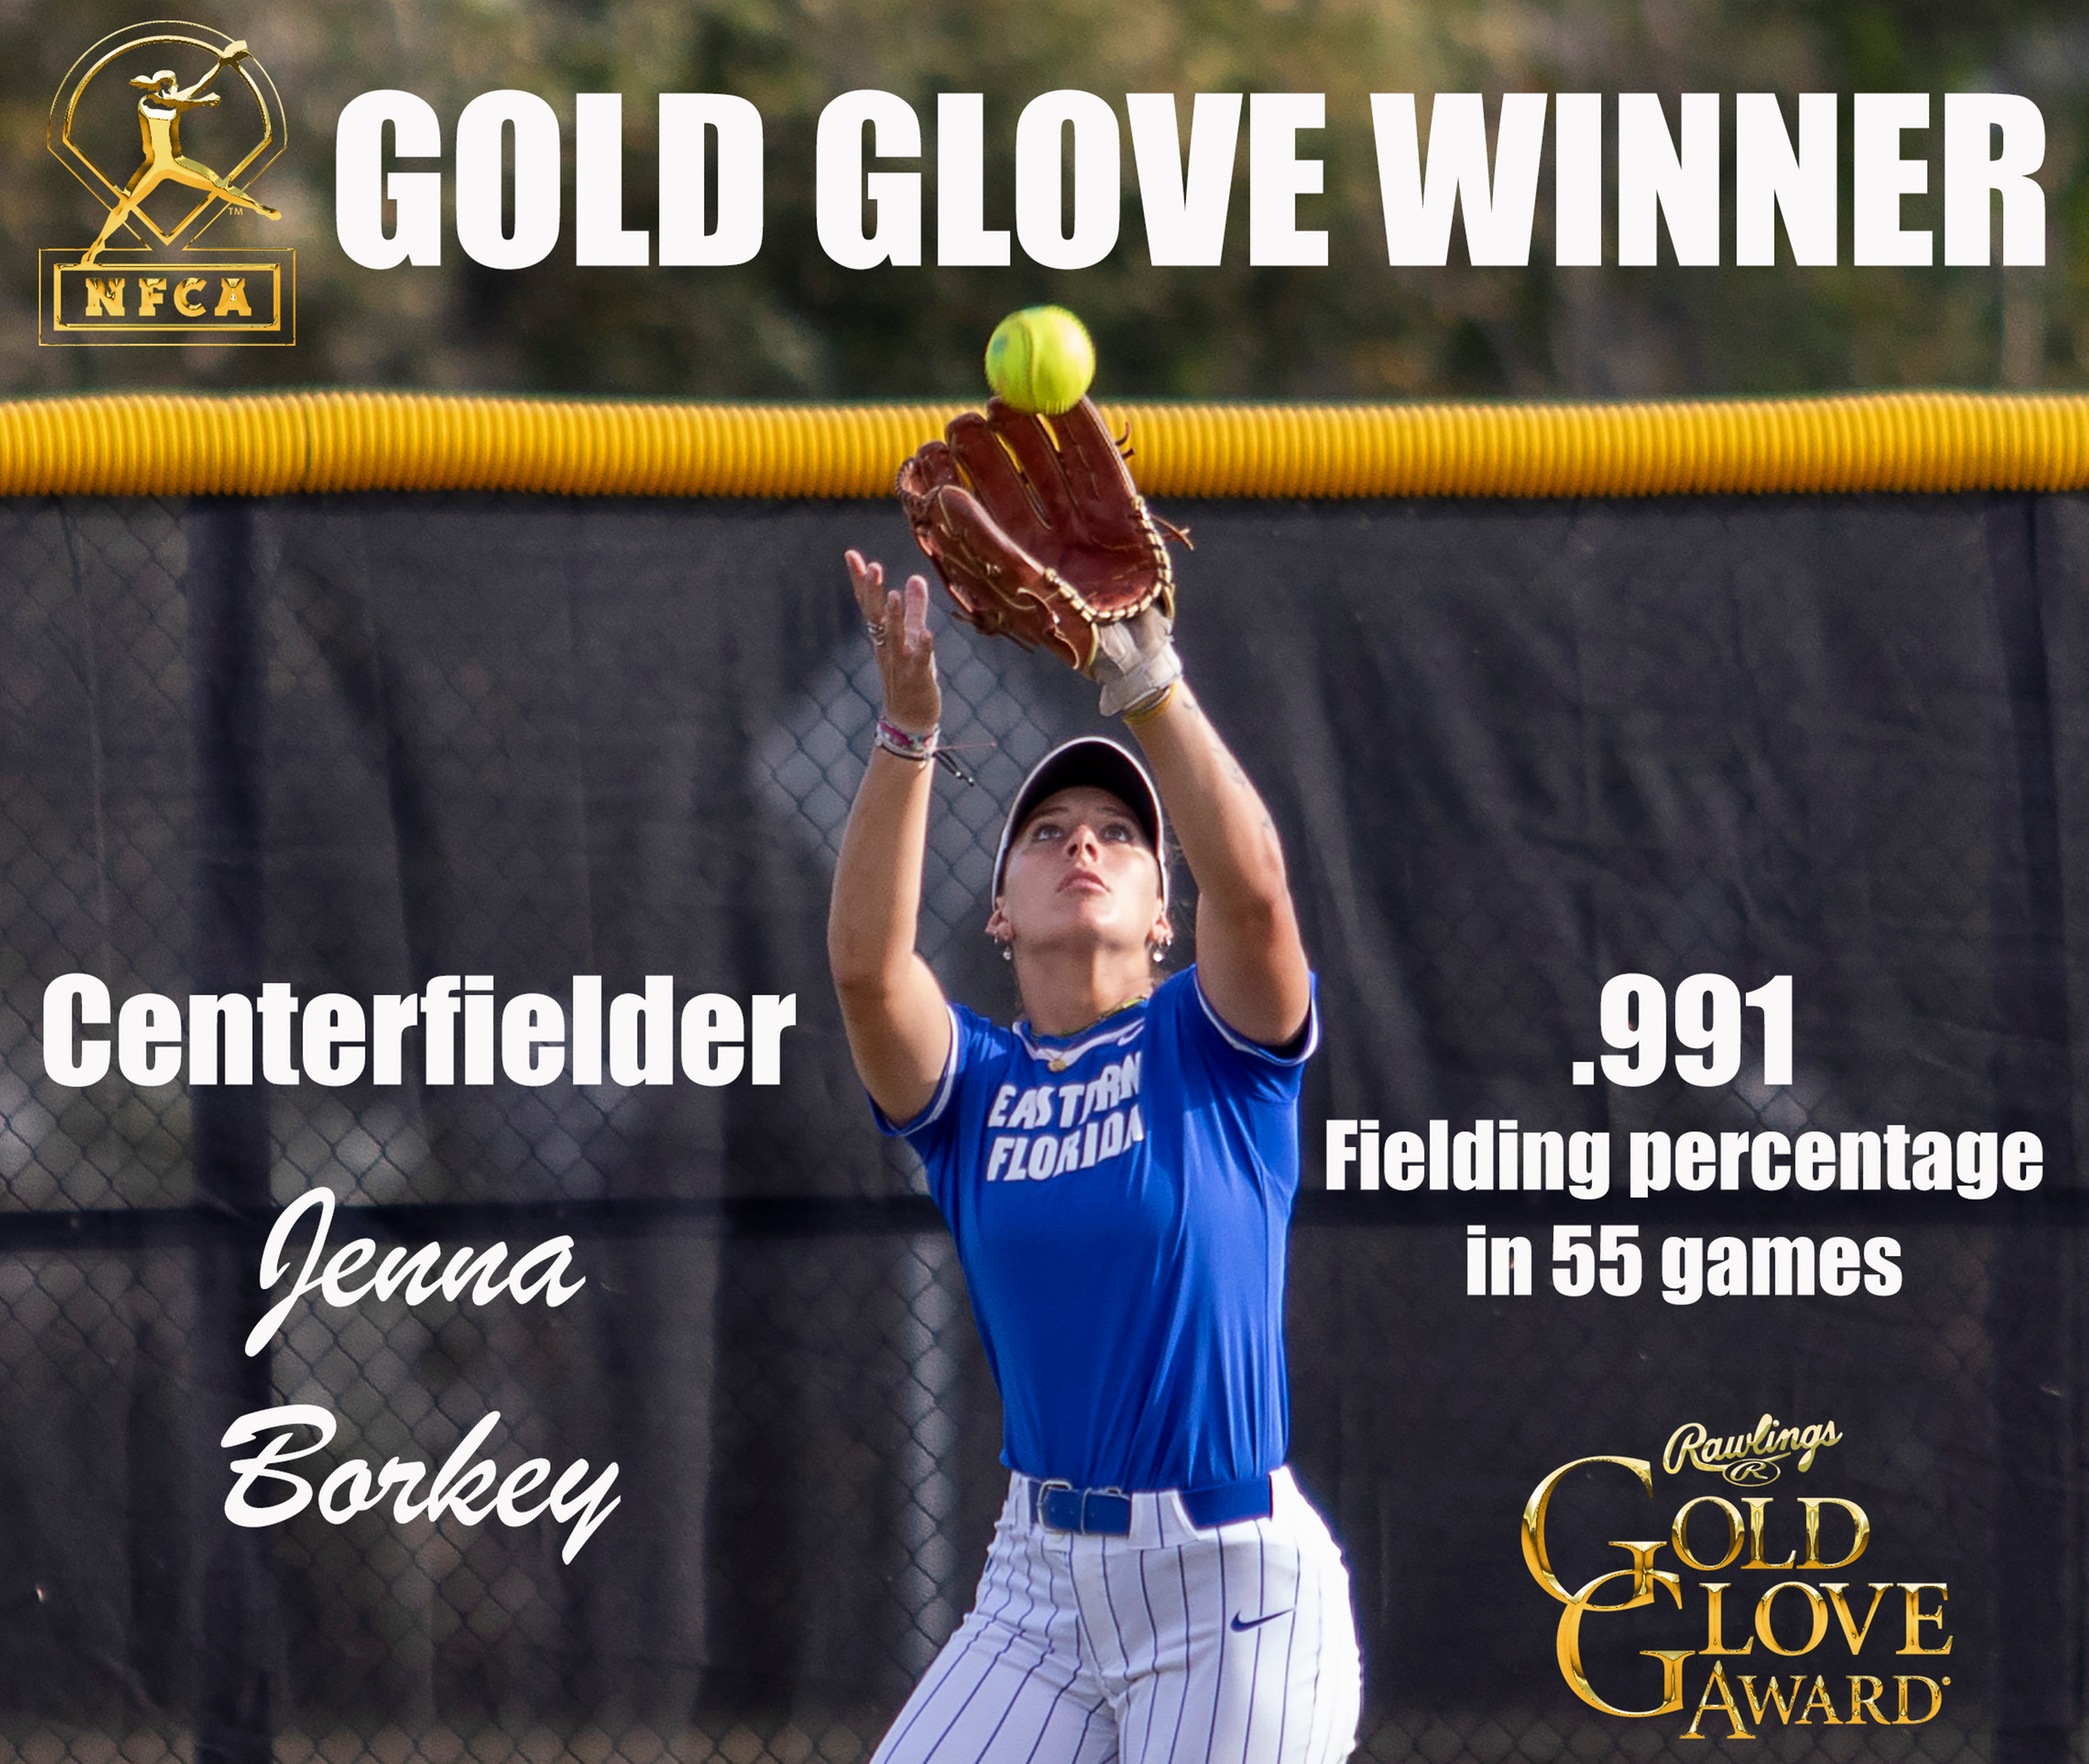 Softball player Jenna Borkey named Gold Glove Award winner